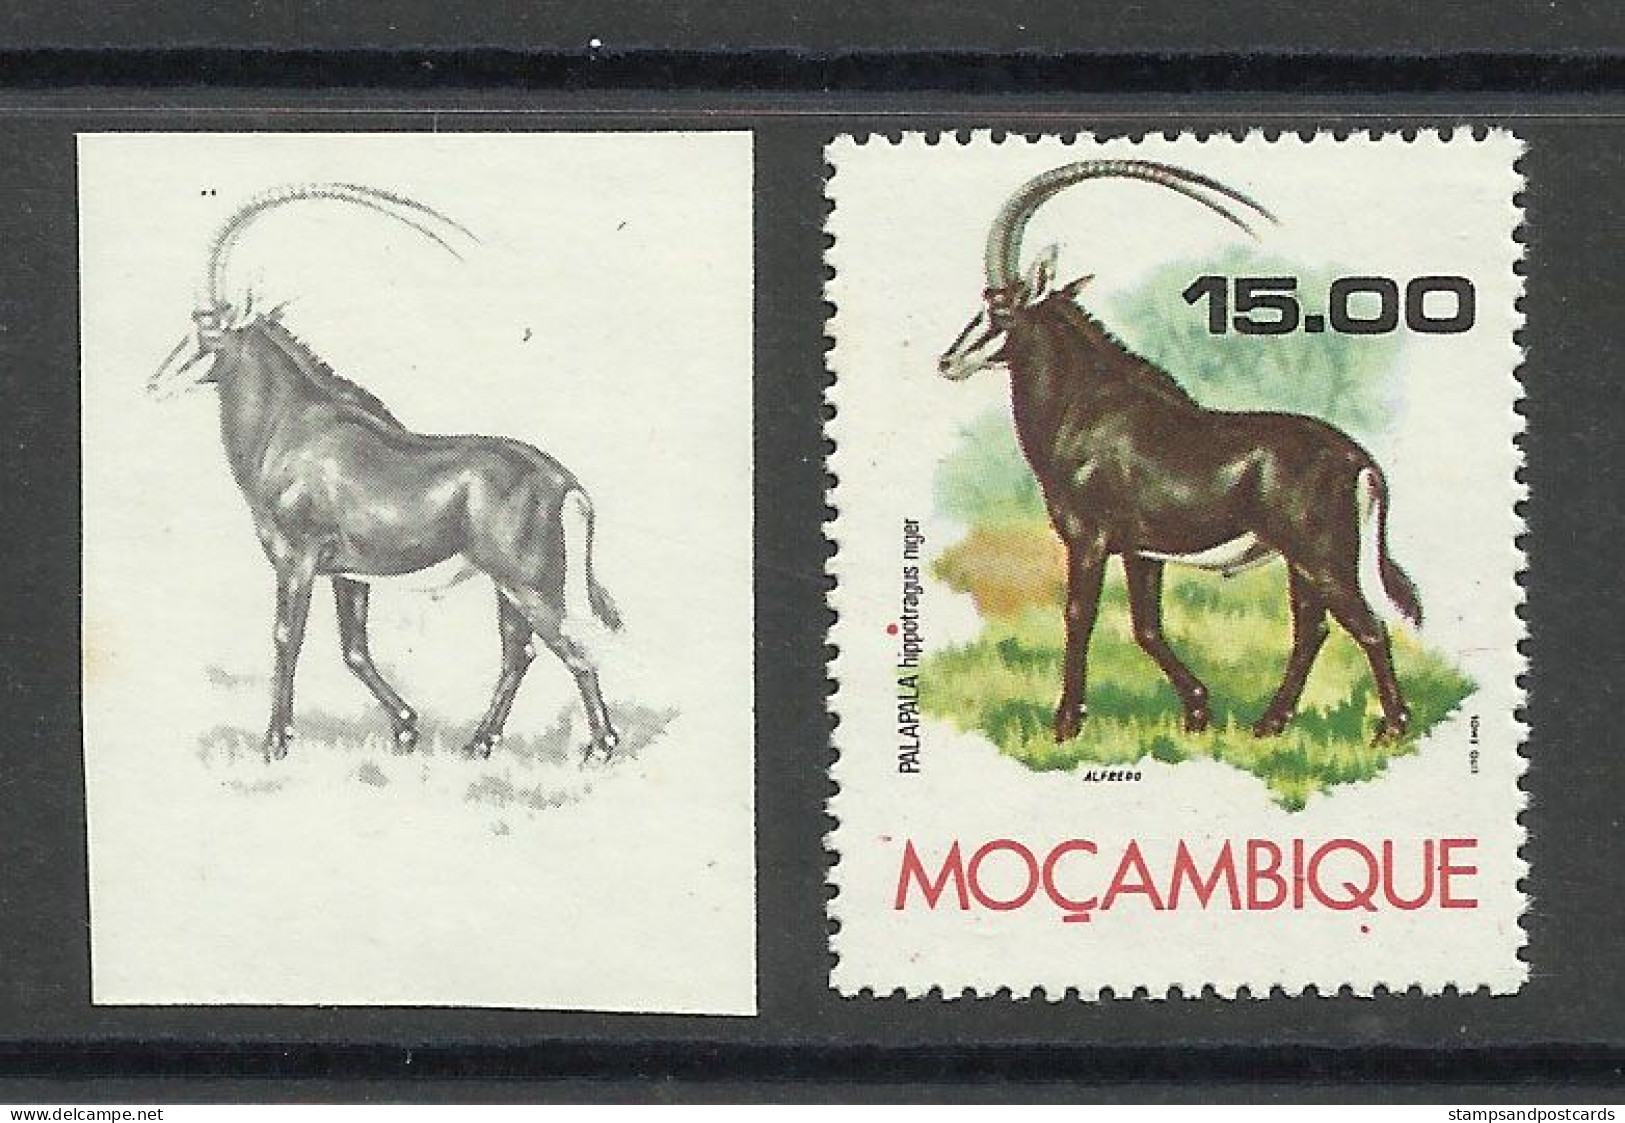 Mozambique 1976 Preuve De Couleur Hippotrague Noir Moçambique 1976 Color Proof Sable Antelope - Rhinoceros